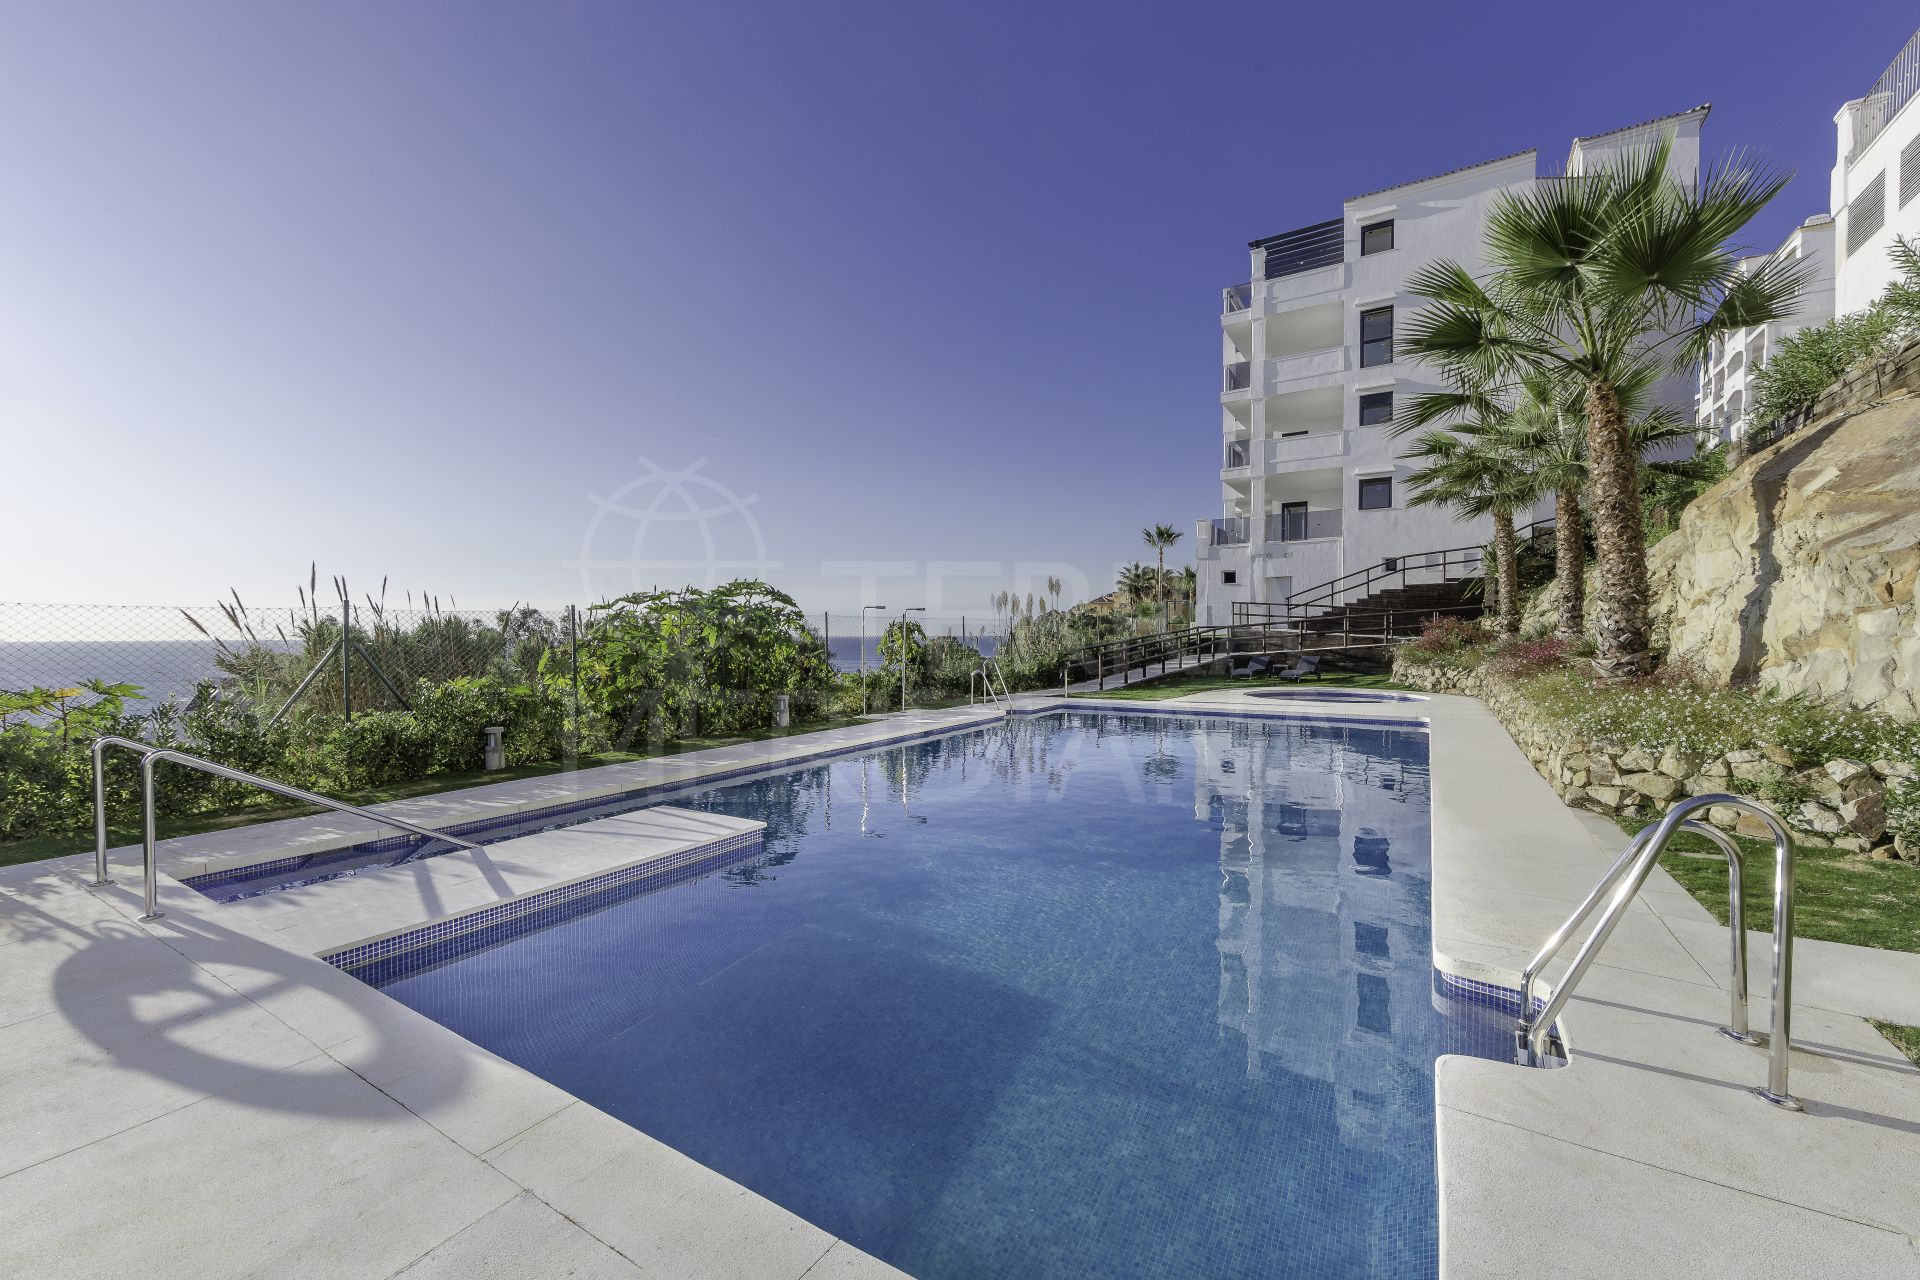 Blue Suites, Manilva - 74 luxury apartments in the new development of Blue Suites, Manilva, Estepona